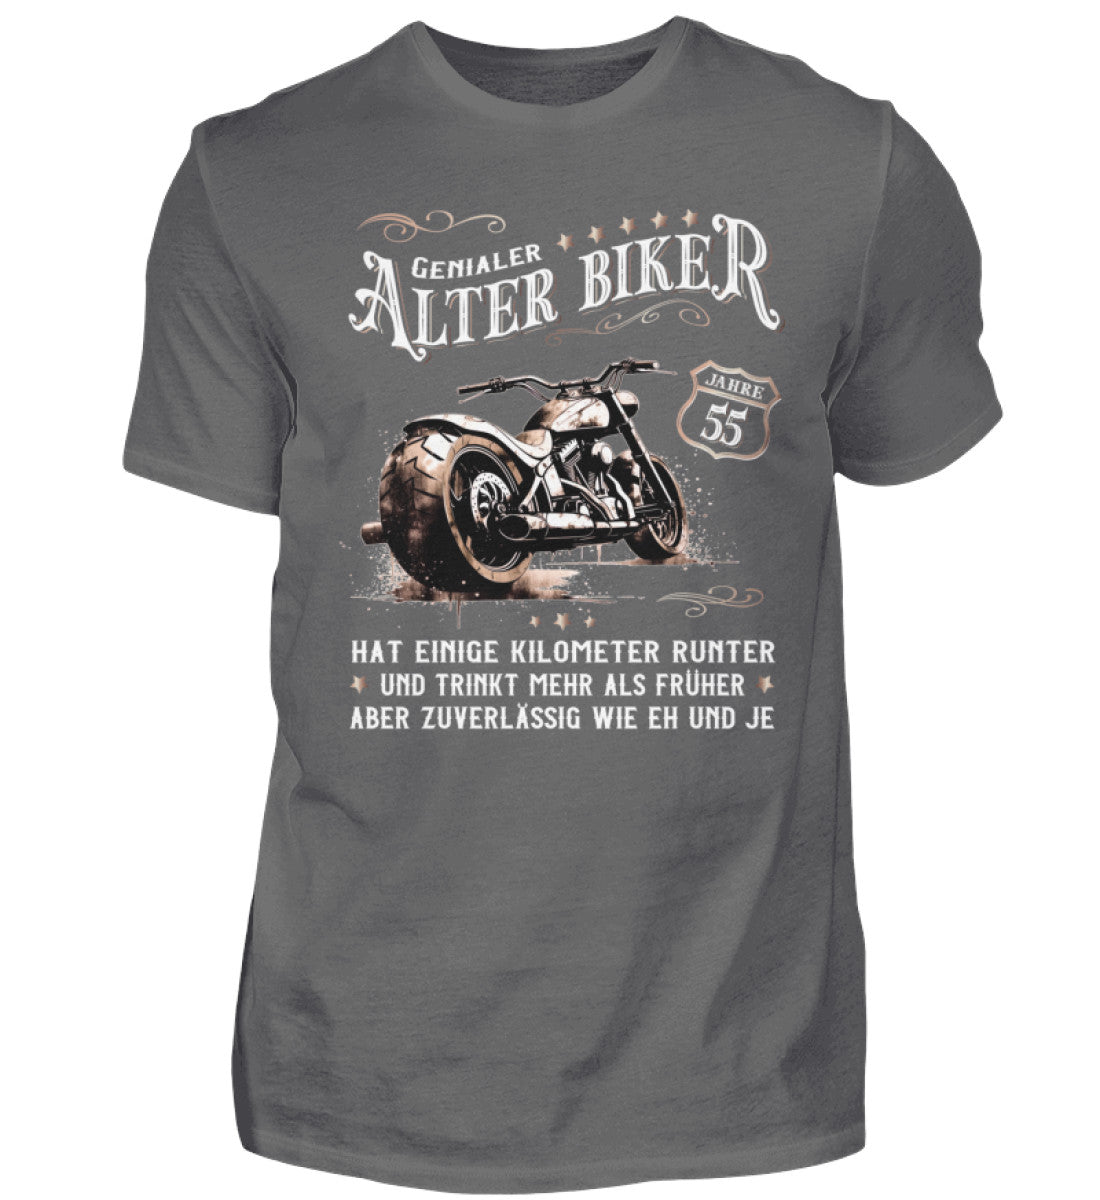 Ein Biker T-Shirt zum Geburtstag für Motorradfahrer von Wingbikers mit dem Aufdruck, Alter Biker - 55 Jahre - Einige Kilometer runter, trinkt mehr - aber zuverlässig wie eh und je - in grau.